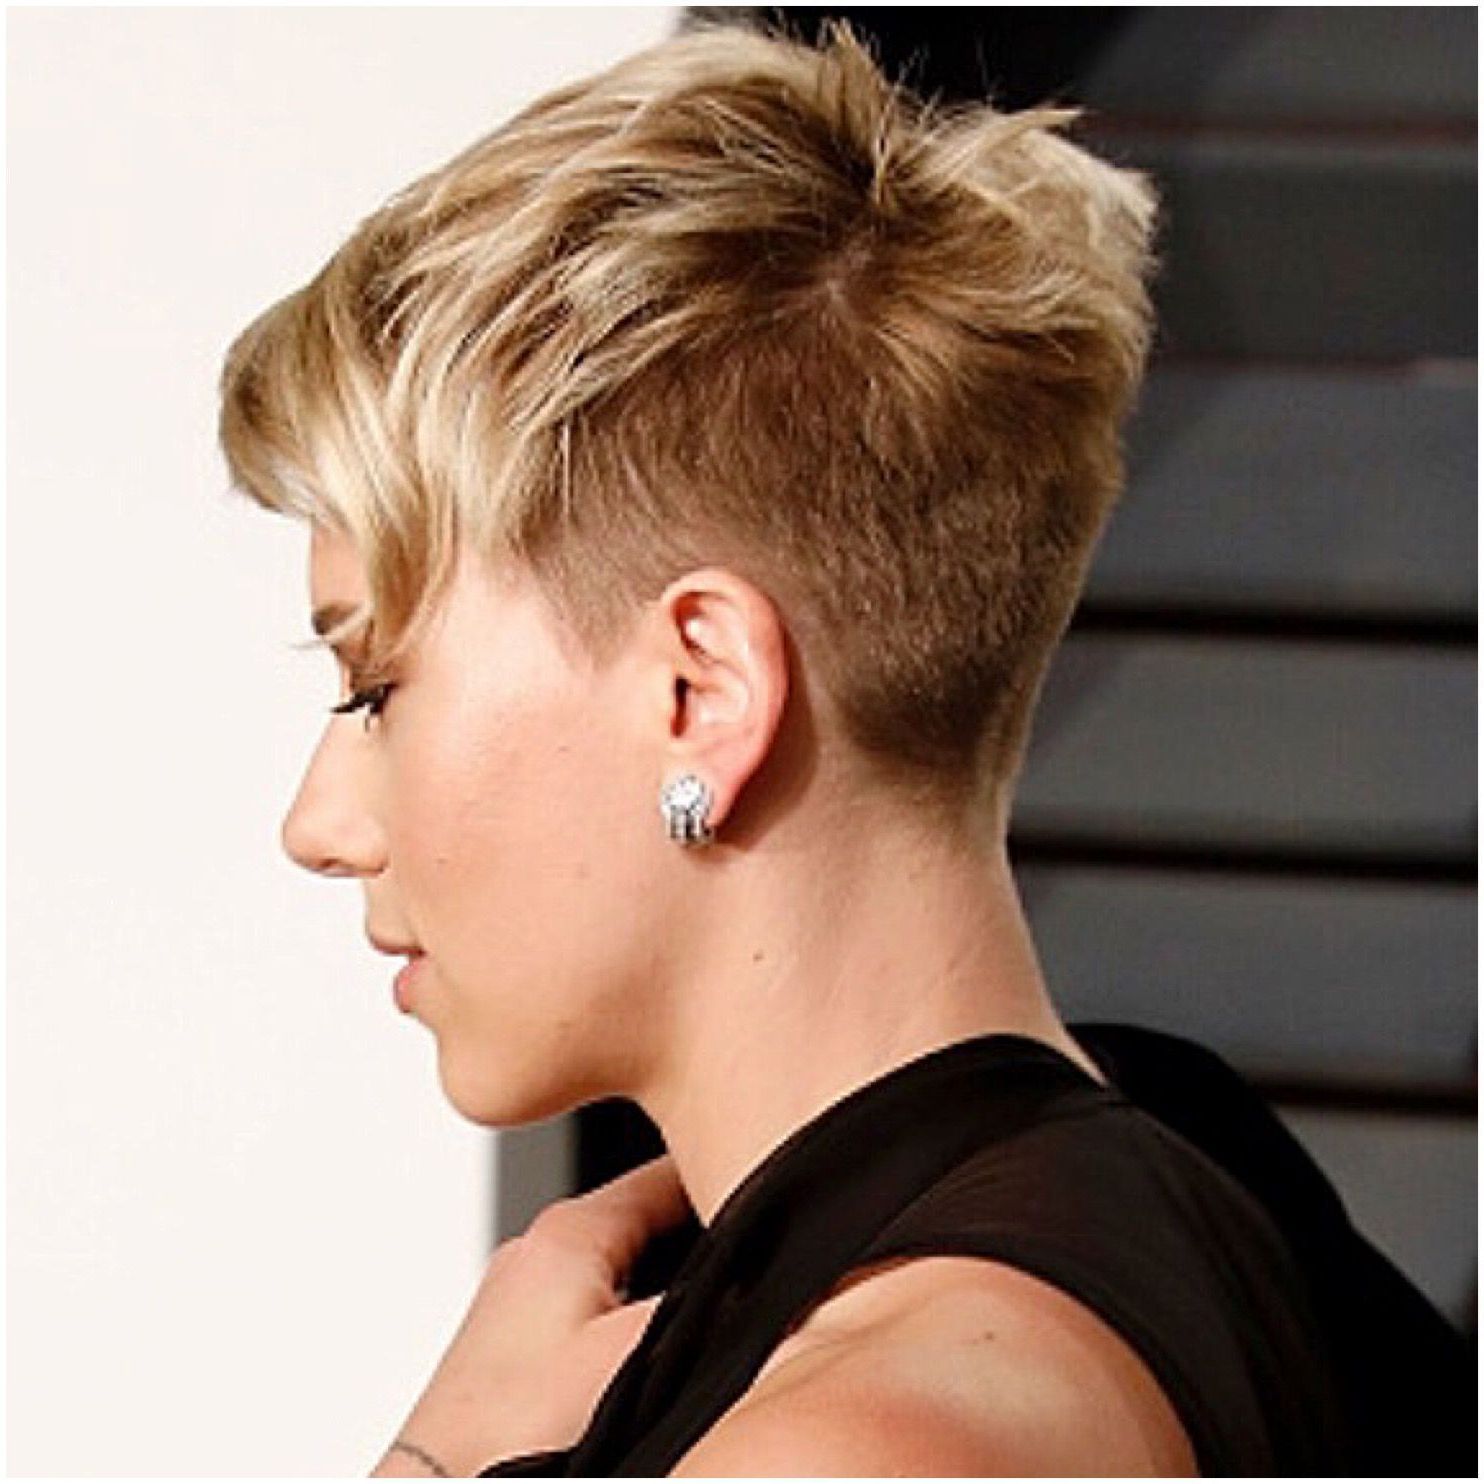 Scarlett Johansson Images Short Hair | Imaganationface Pertaining To Scarlett Johansson Short Haircuts (Photo 14 of 25)